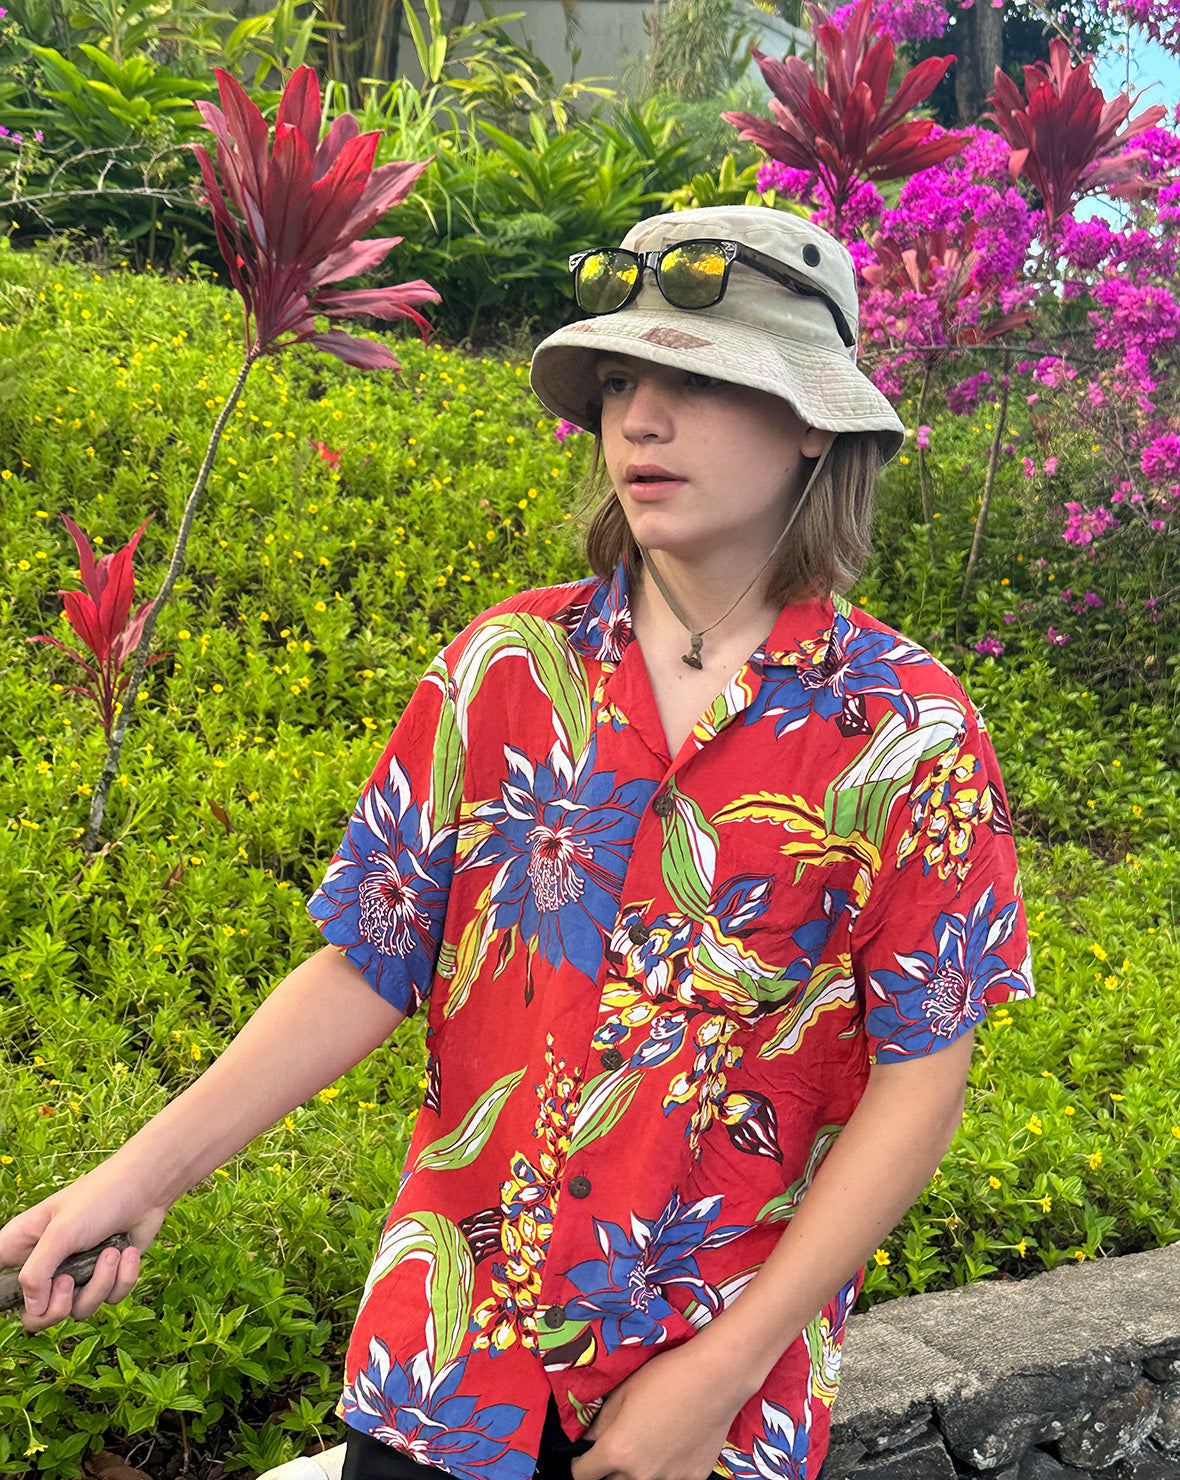 Levi Sports a Vintage Rayon Aloha Shirt in Maui, Hawaii